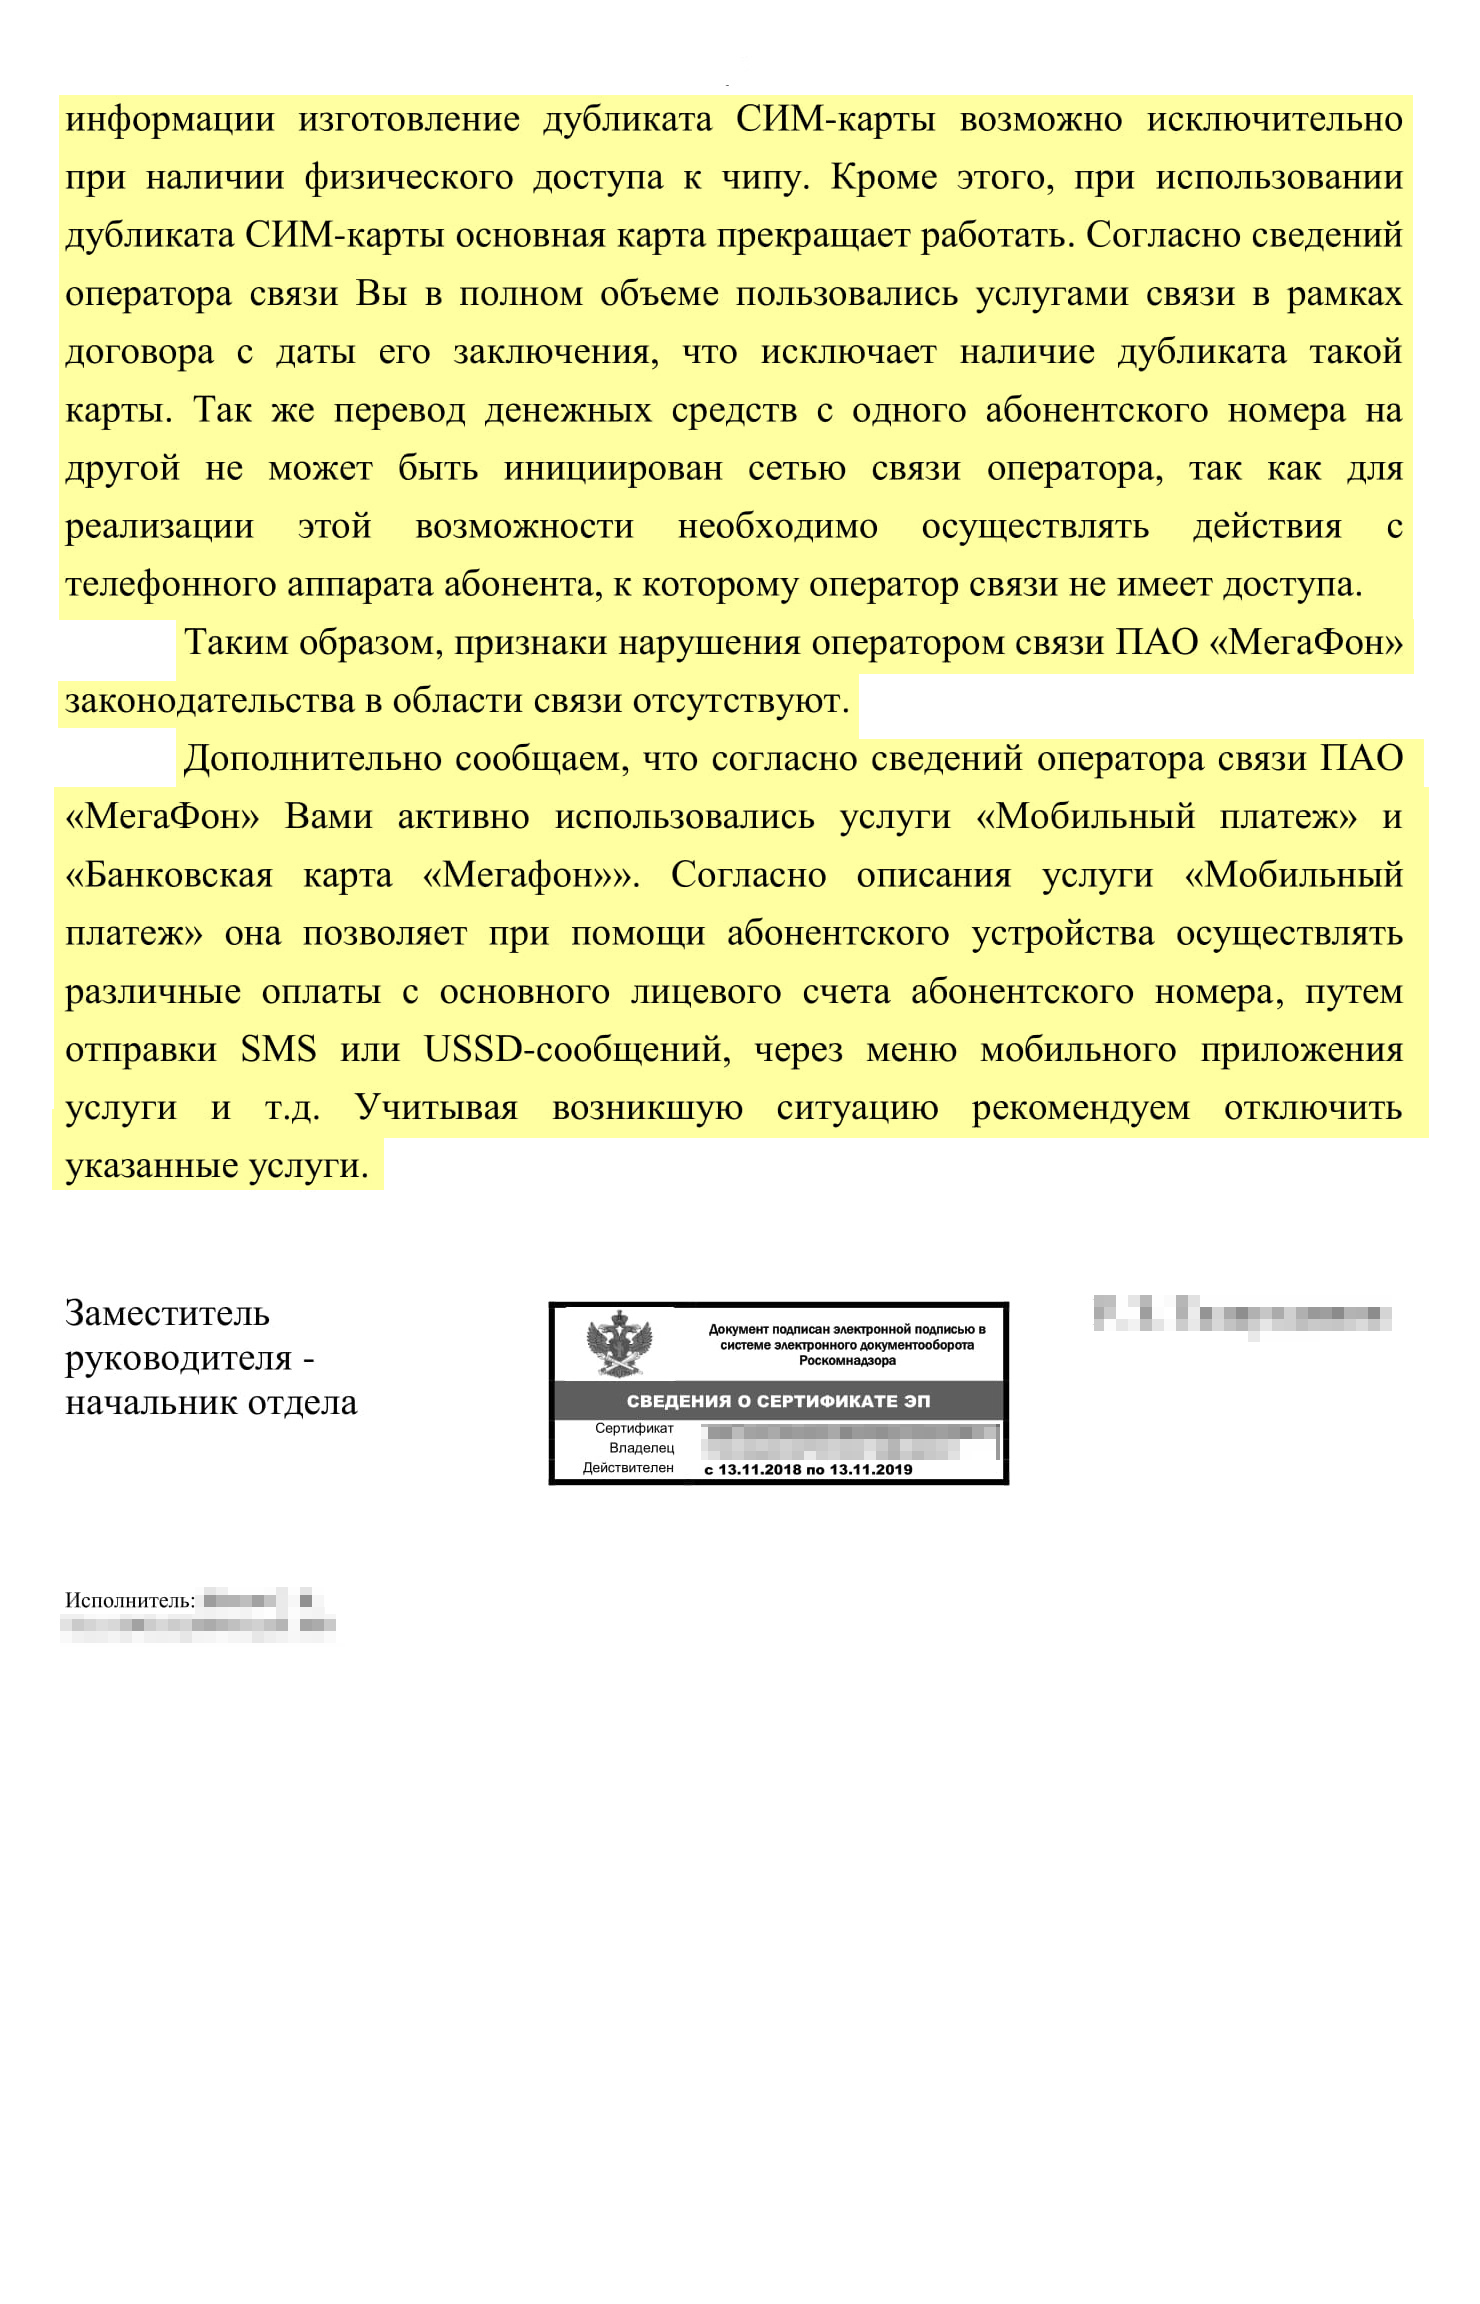 Ответ управления Роскомнадзора по Республике Татарстан: клона симкарты нет, оснований провести проверку — тоже. Очередной формальный подход